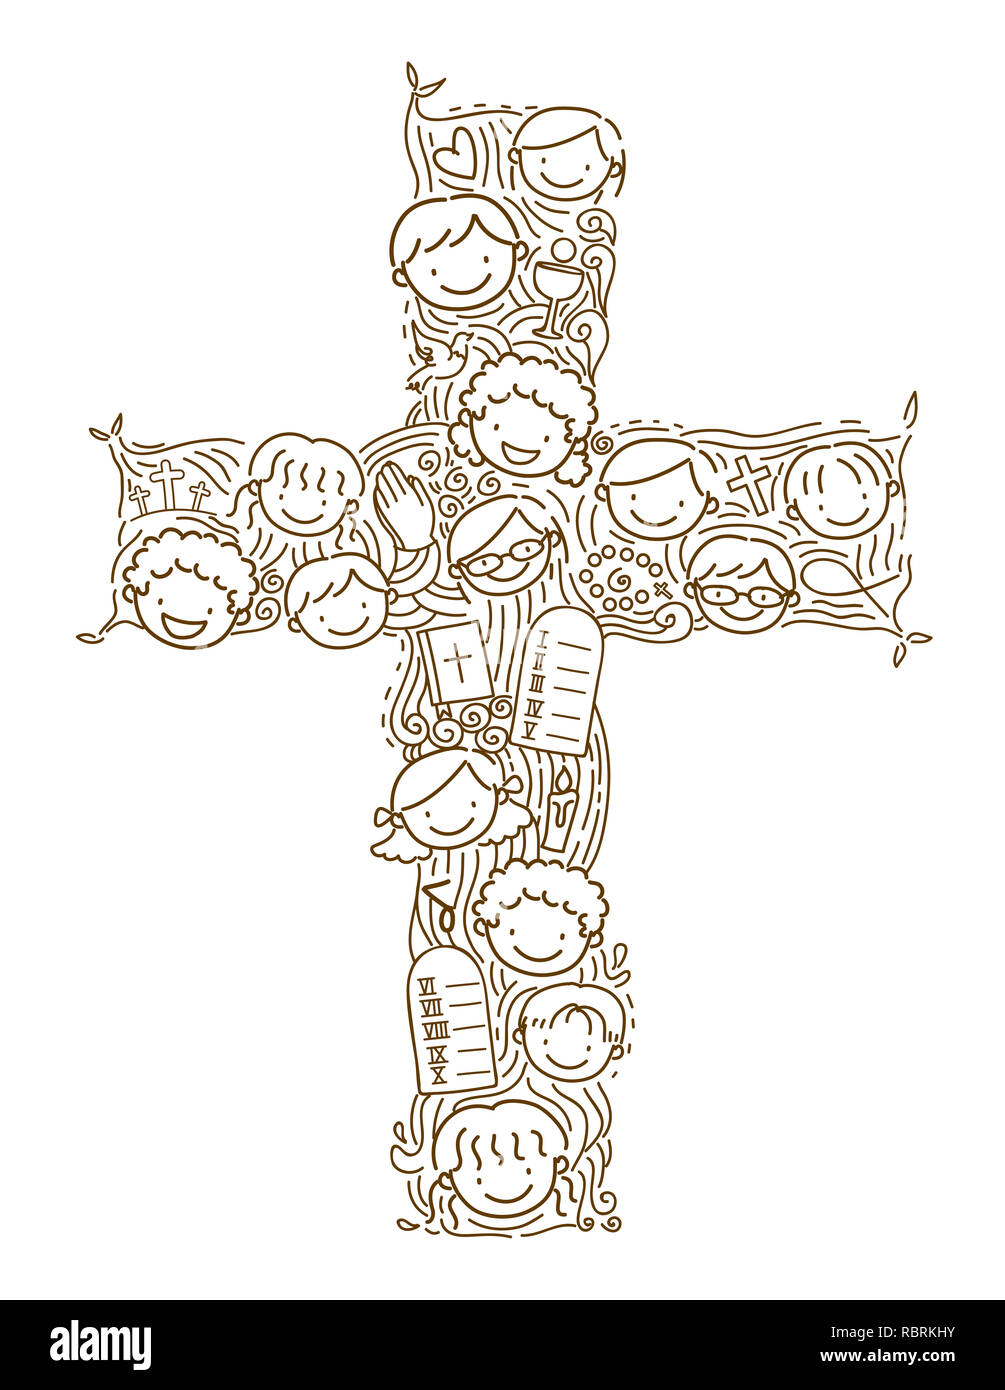 Abbildung: Stickman Kinder Köpfe und christliche Elemente bilden ein Kreuz Stockfoto